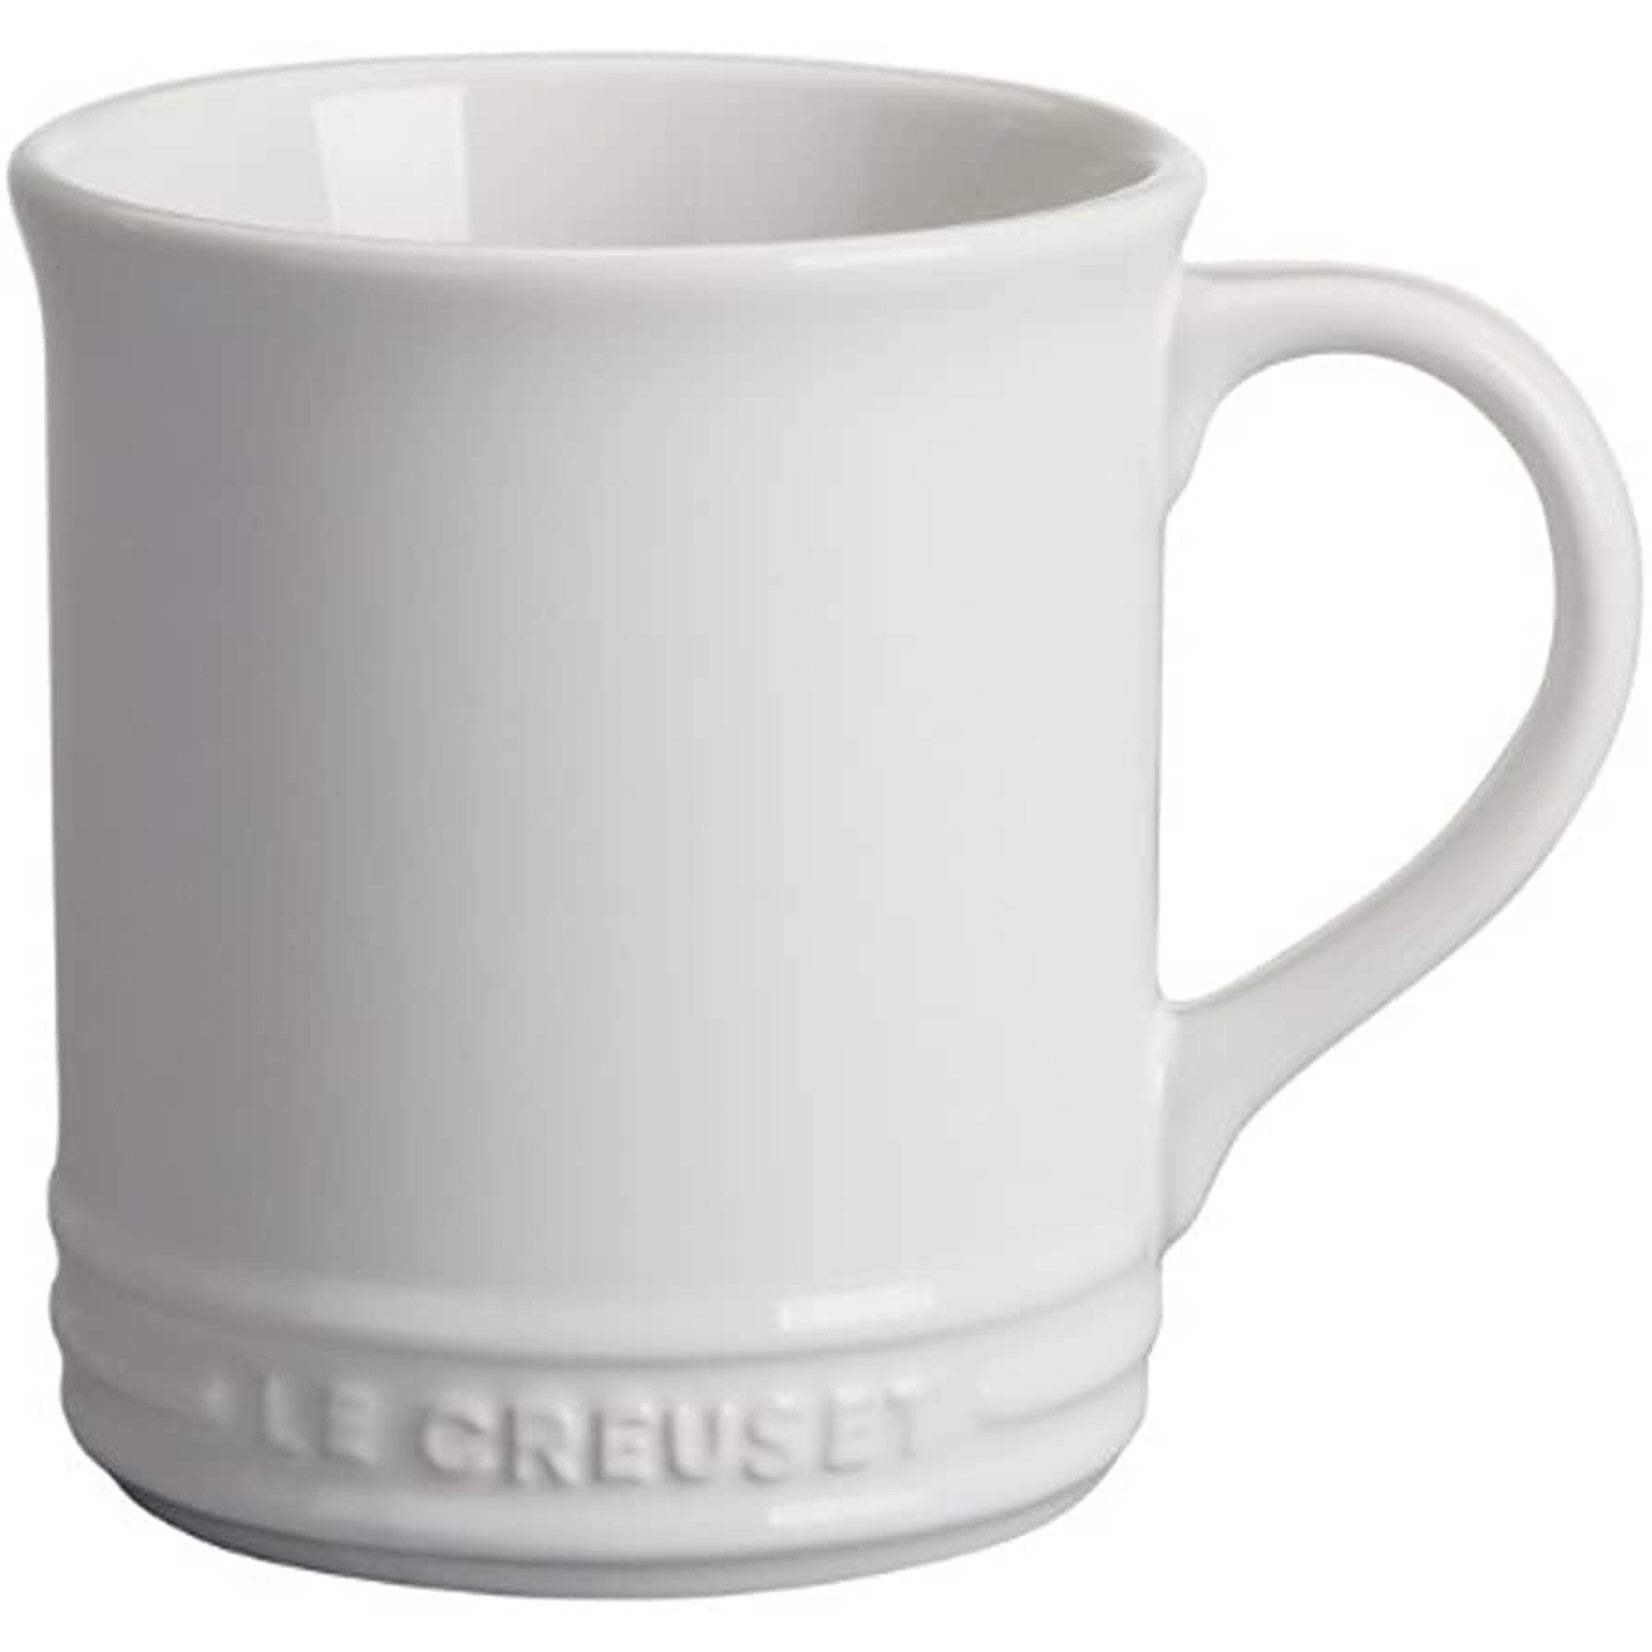 Le Creuset Le Creuset Mug, 14 oz